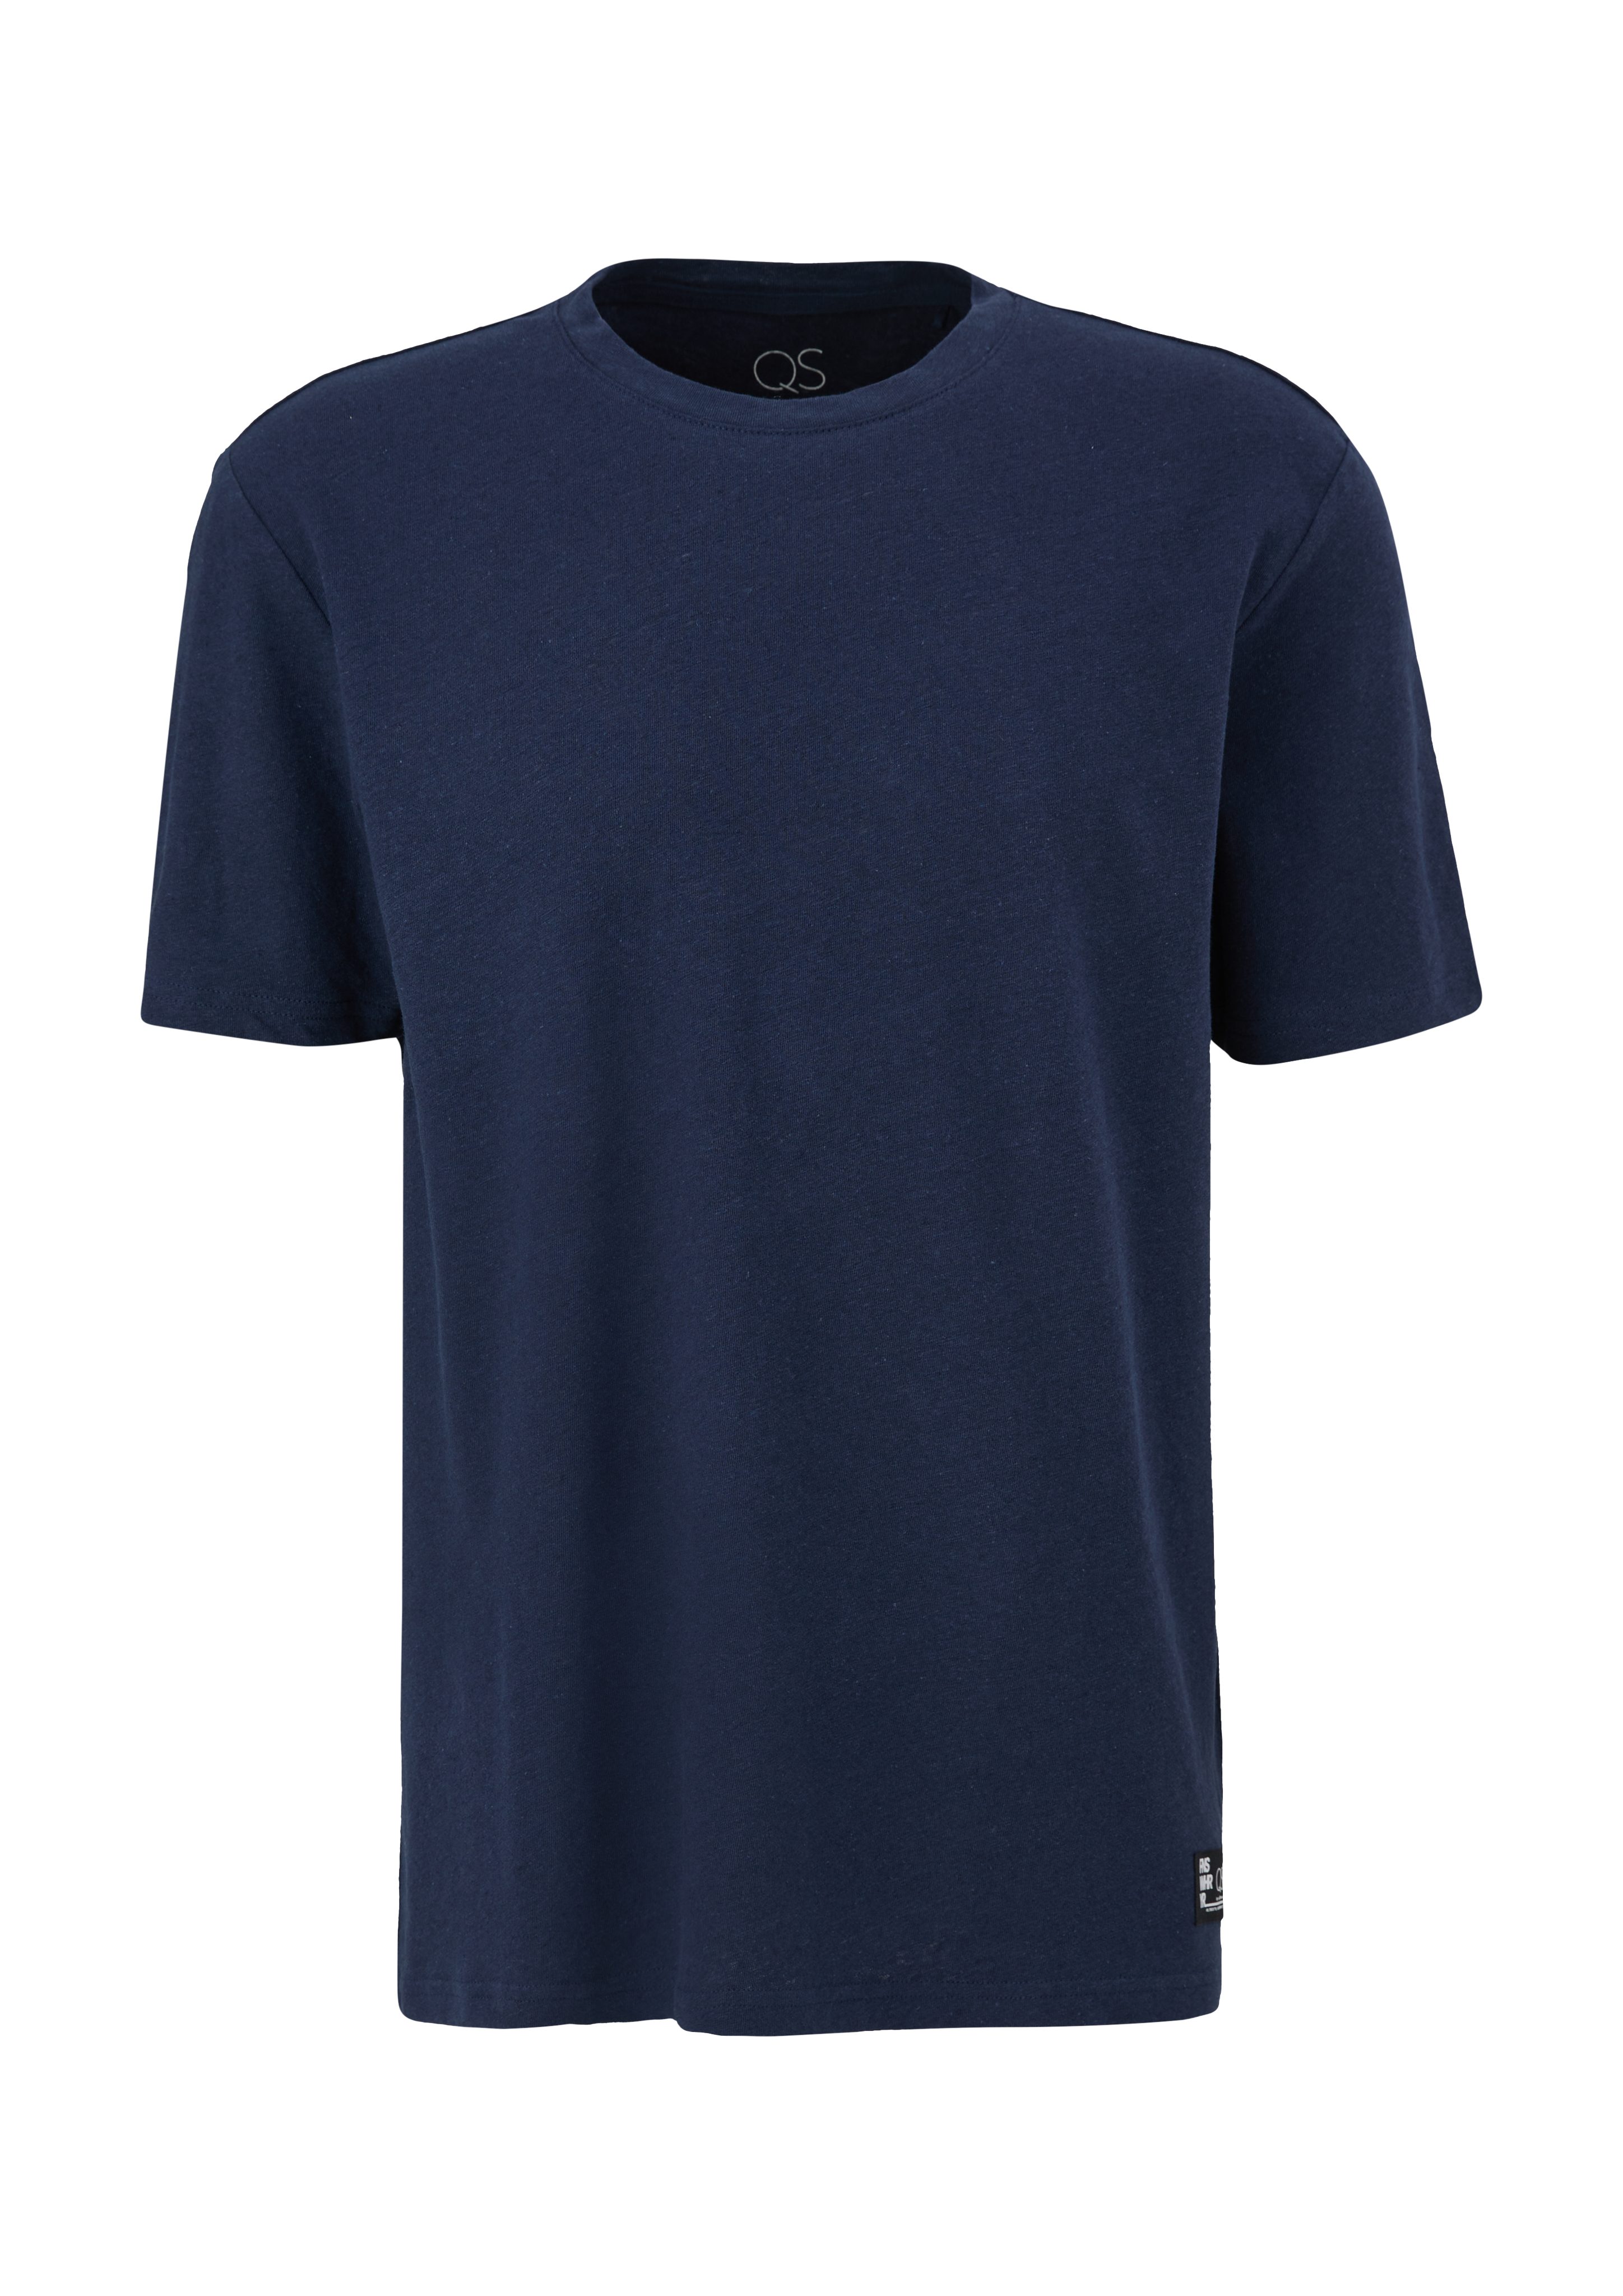 T-Shirt Label-Patch tiefblau Kurzarmshirt QS Leinenmix aus